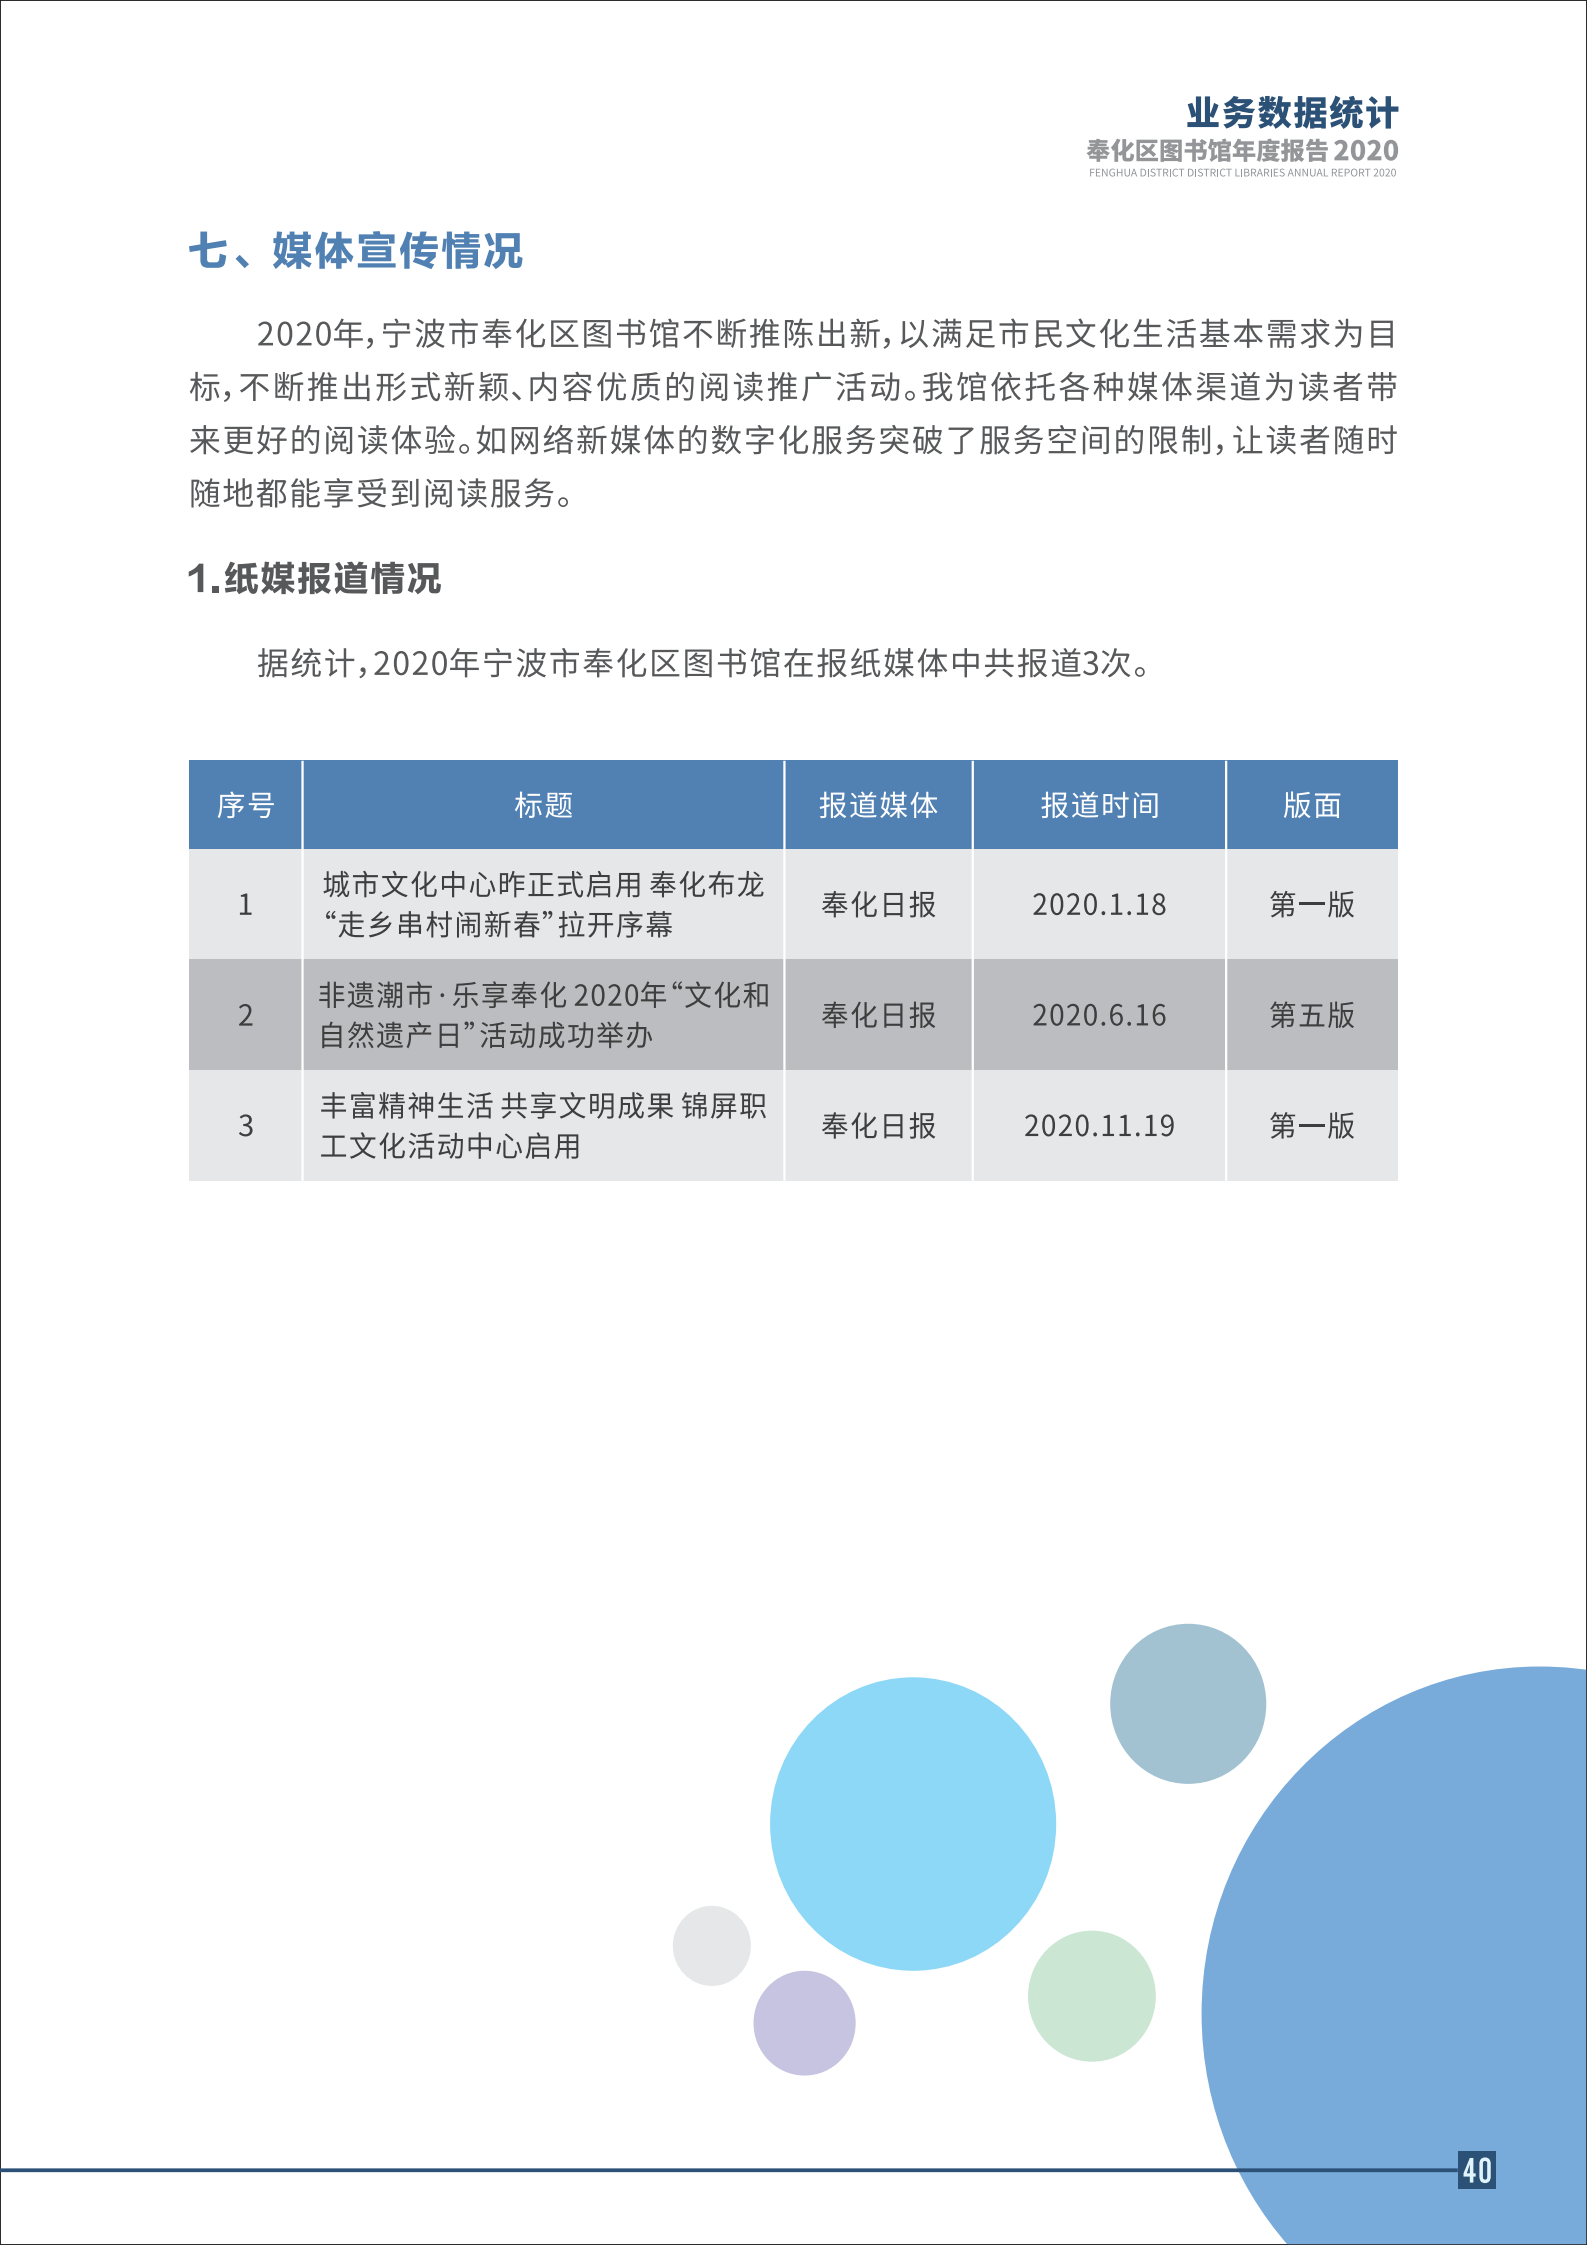 宁波市奉化区图书馆2020年年度报告 终稿_40.png